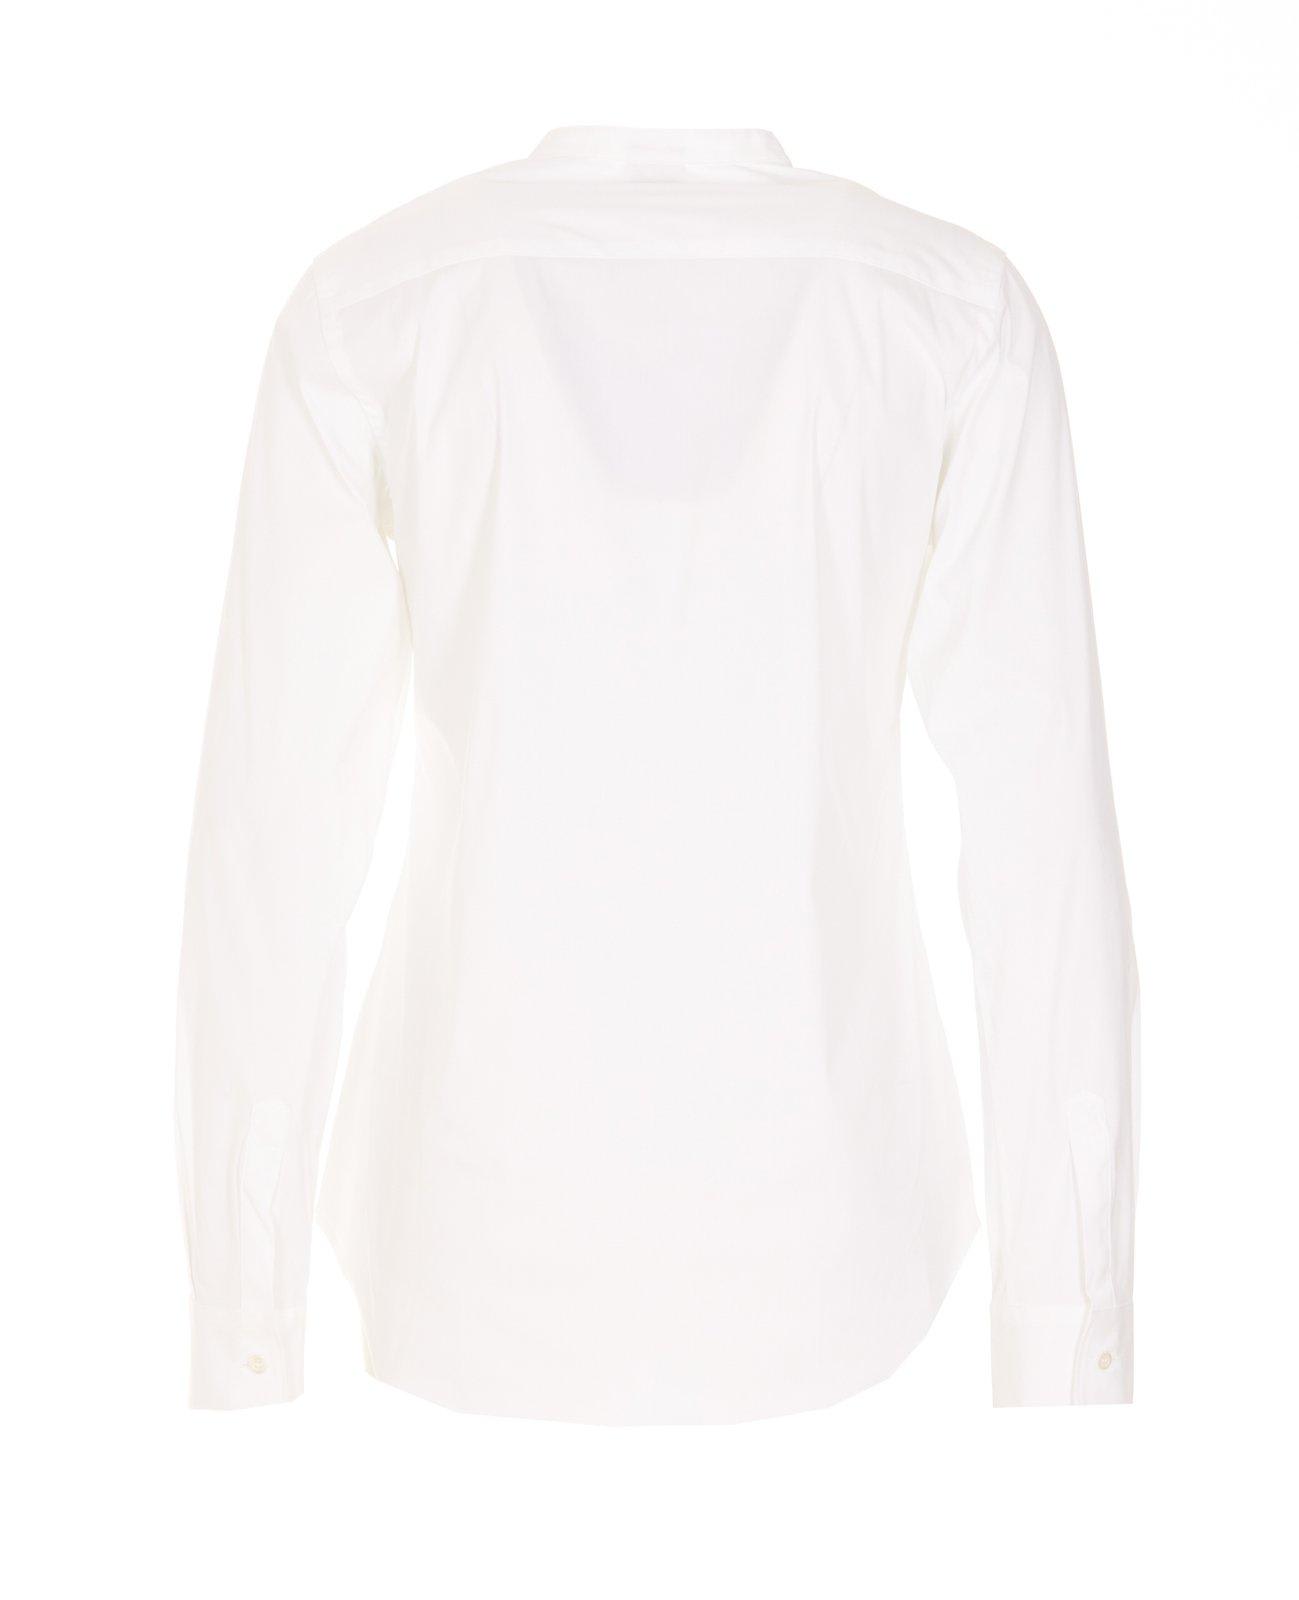 Shop Aspesi Stretch Poplin Shirt In White